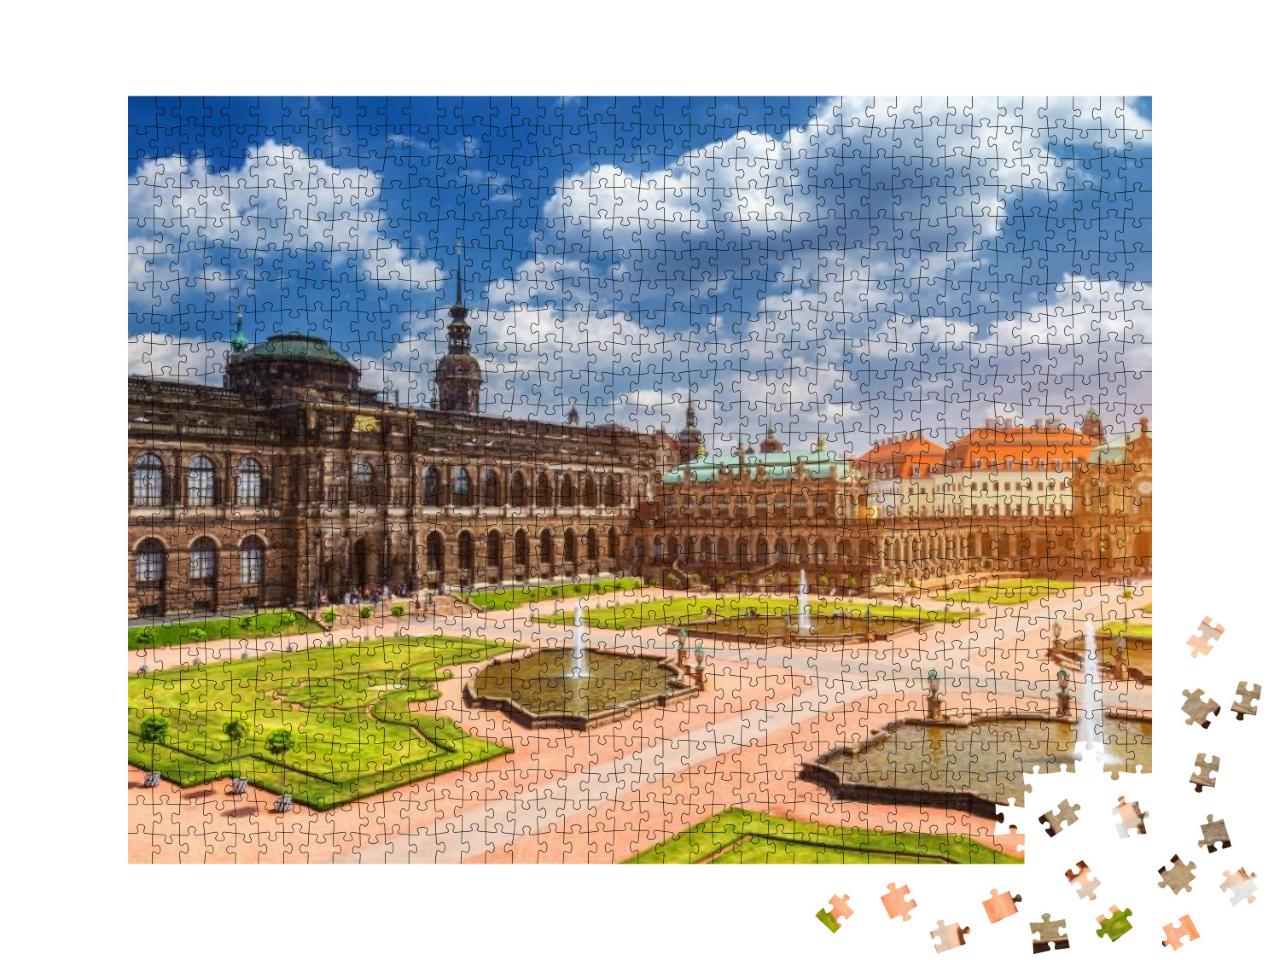 Puzzle 1000 Teile „Dresdner Zwinger, Kunsthalle von Dresden, Sachsen“